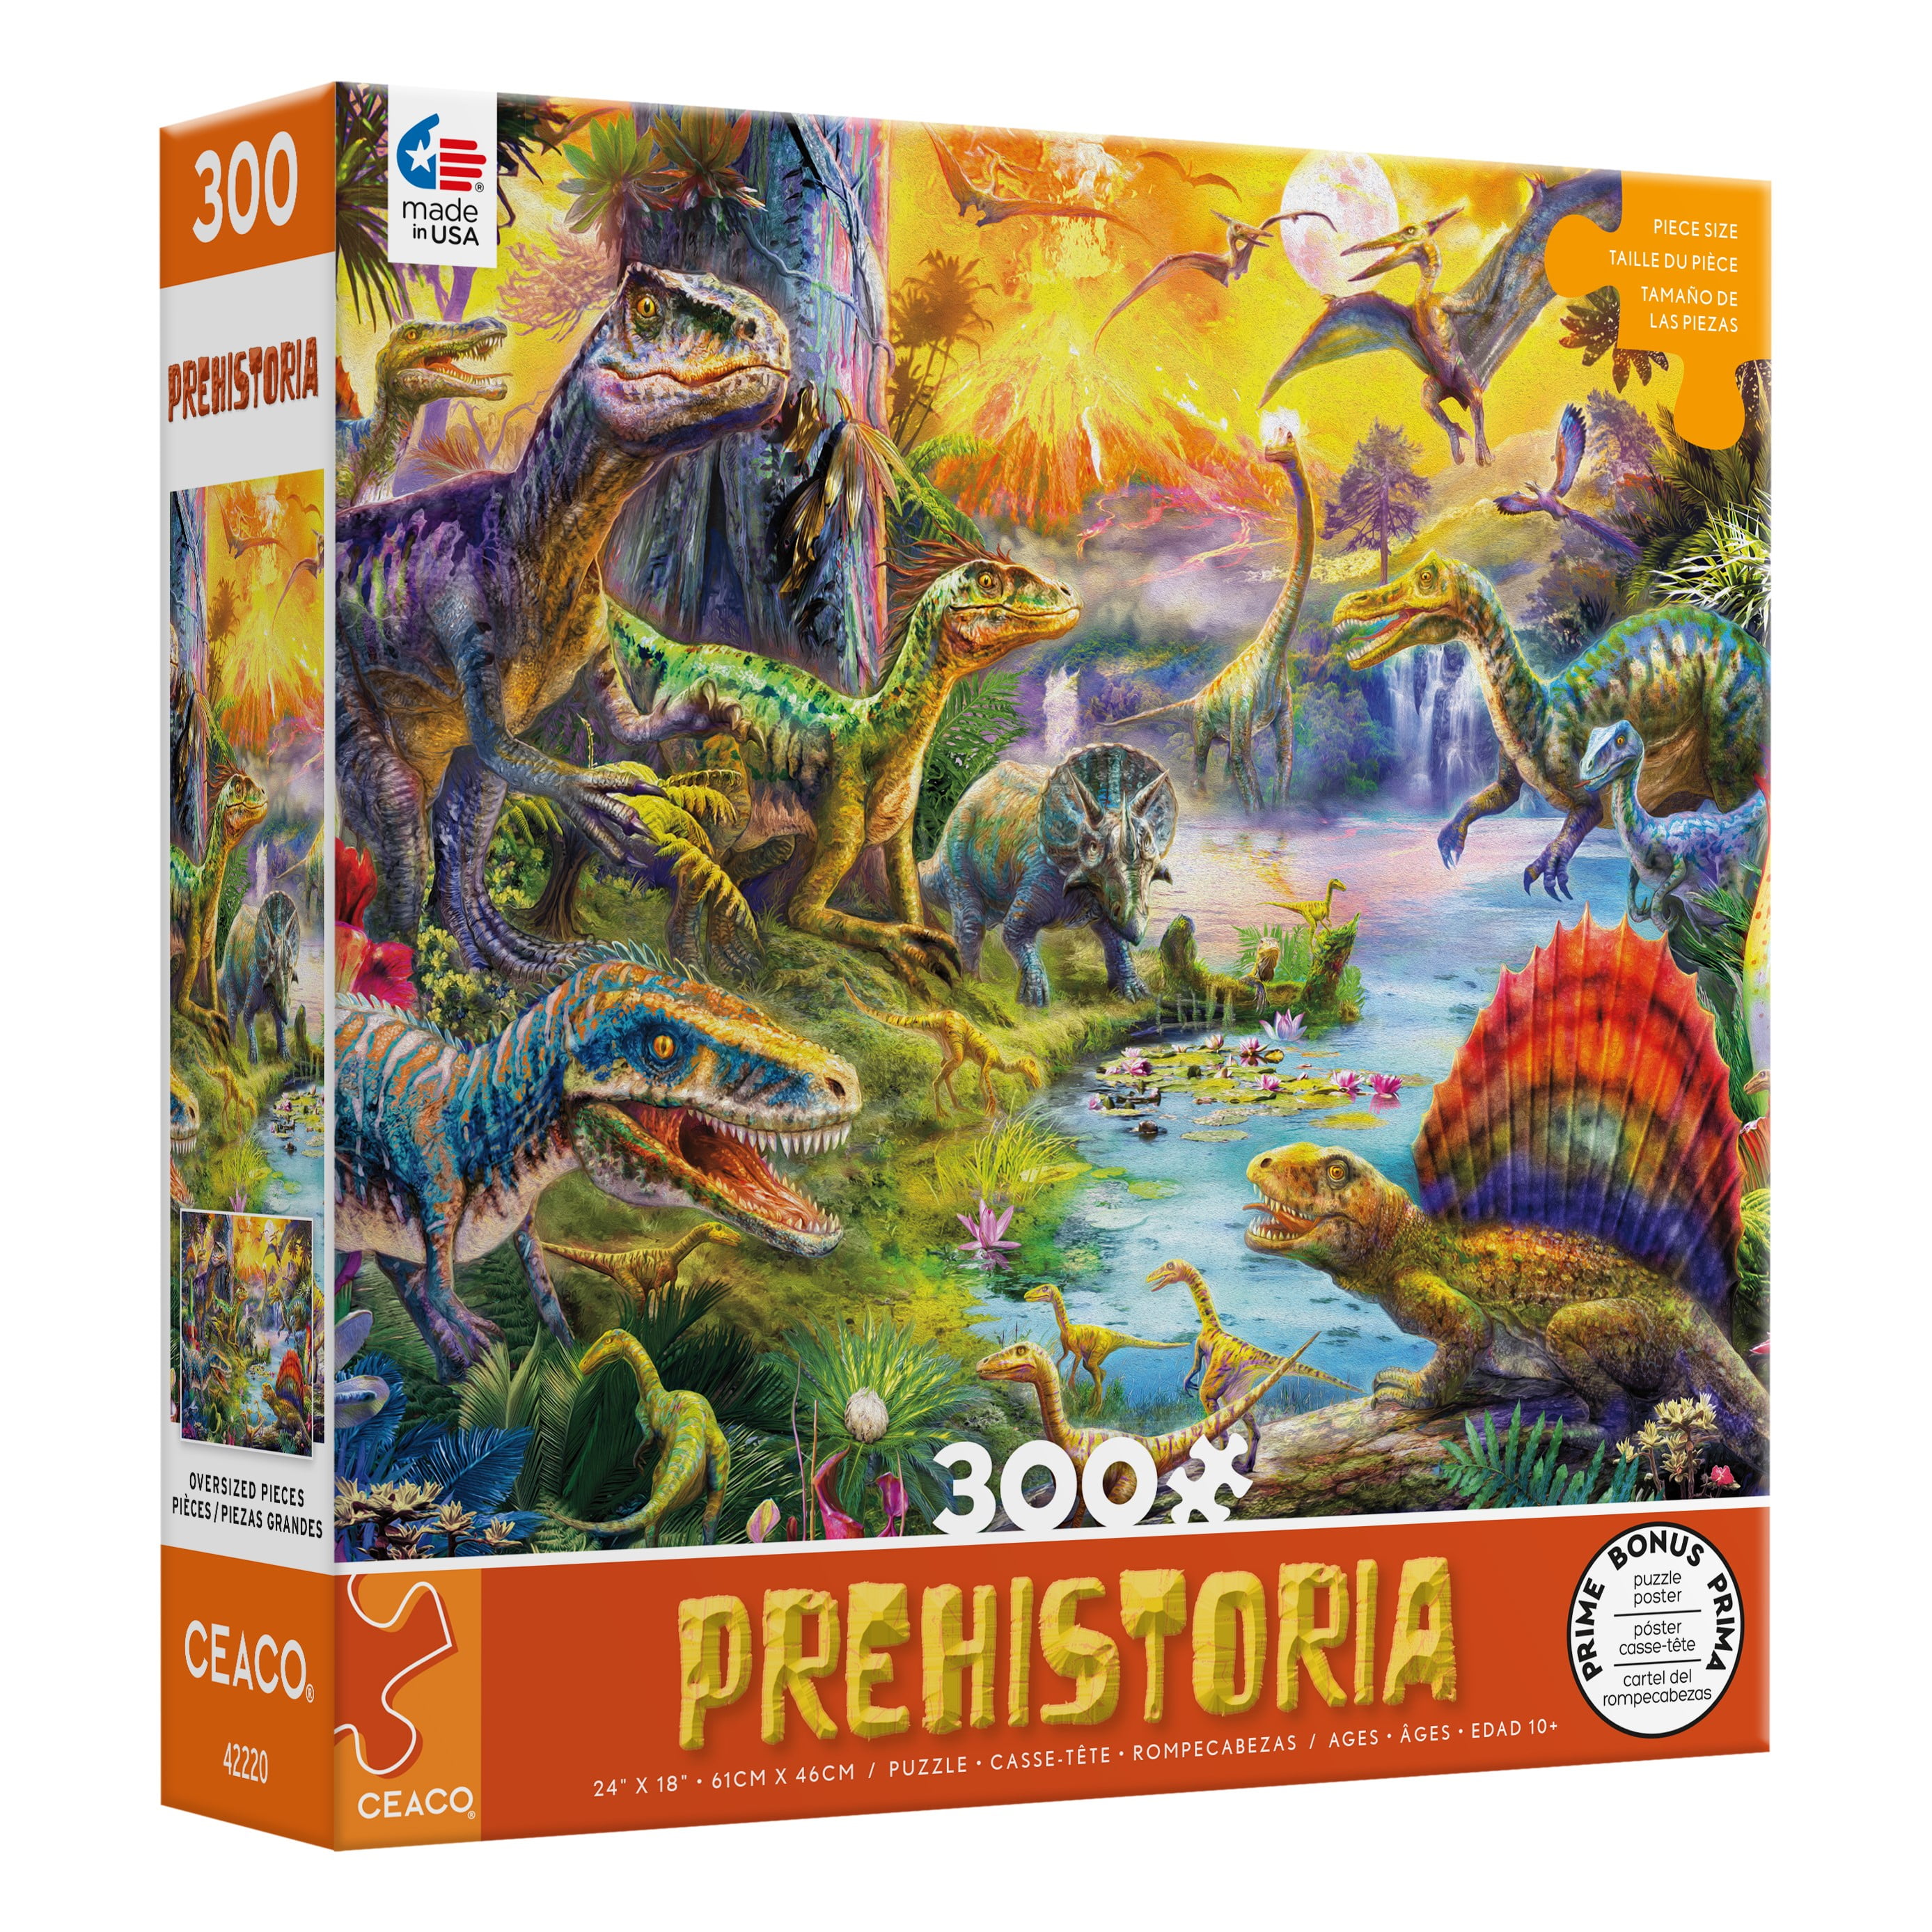 Puzzle Pièces XXL - Lama Dino-51410 500 pièces Puzzles 500 à 999 pièces -  /Planet'Puzzles